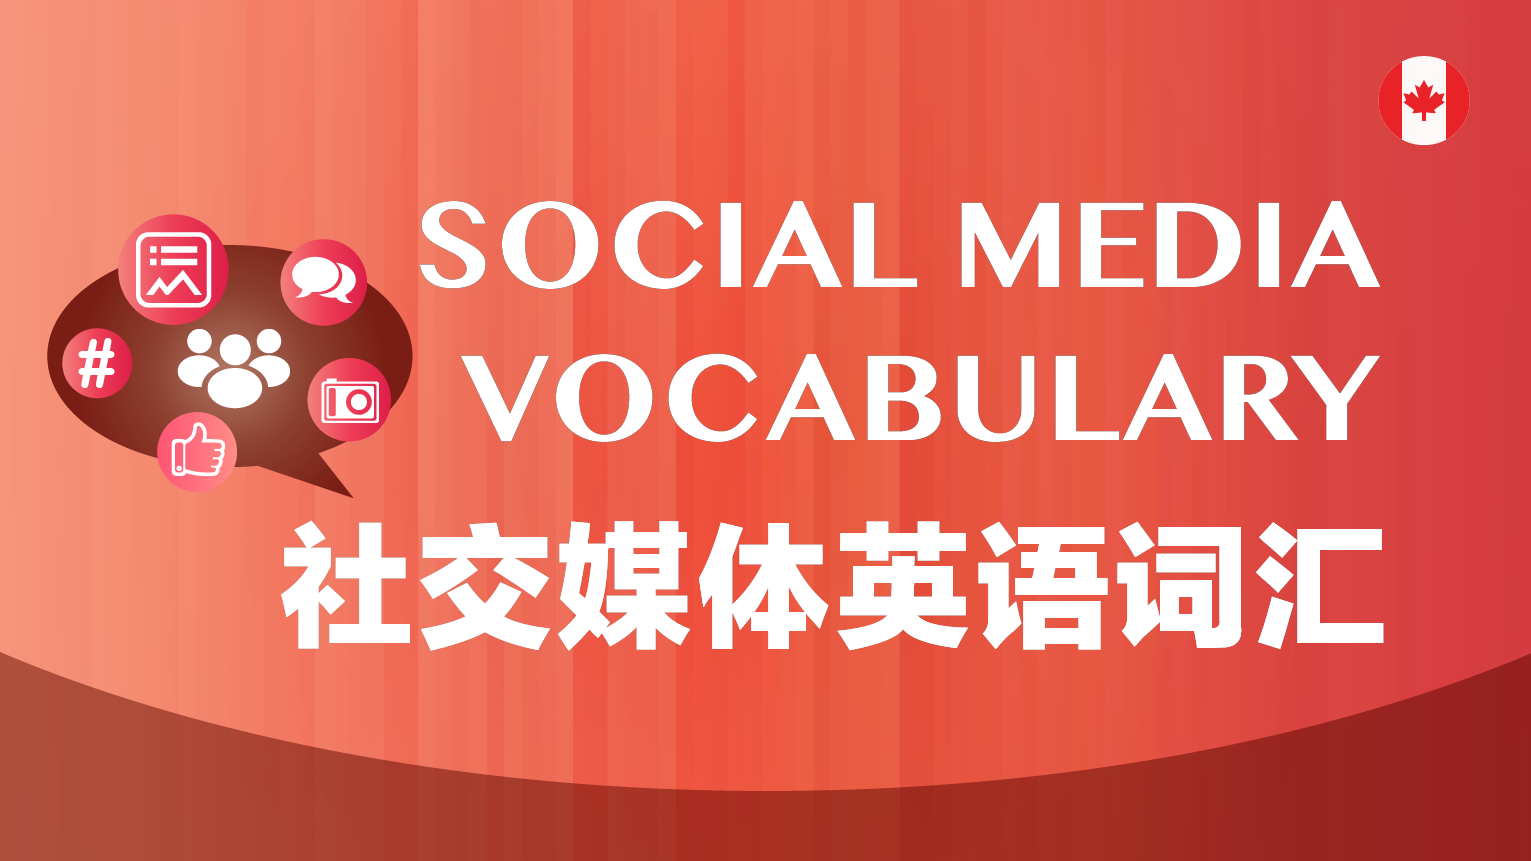 Social Media Related Vocabulary